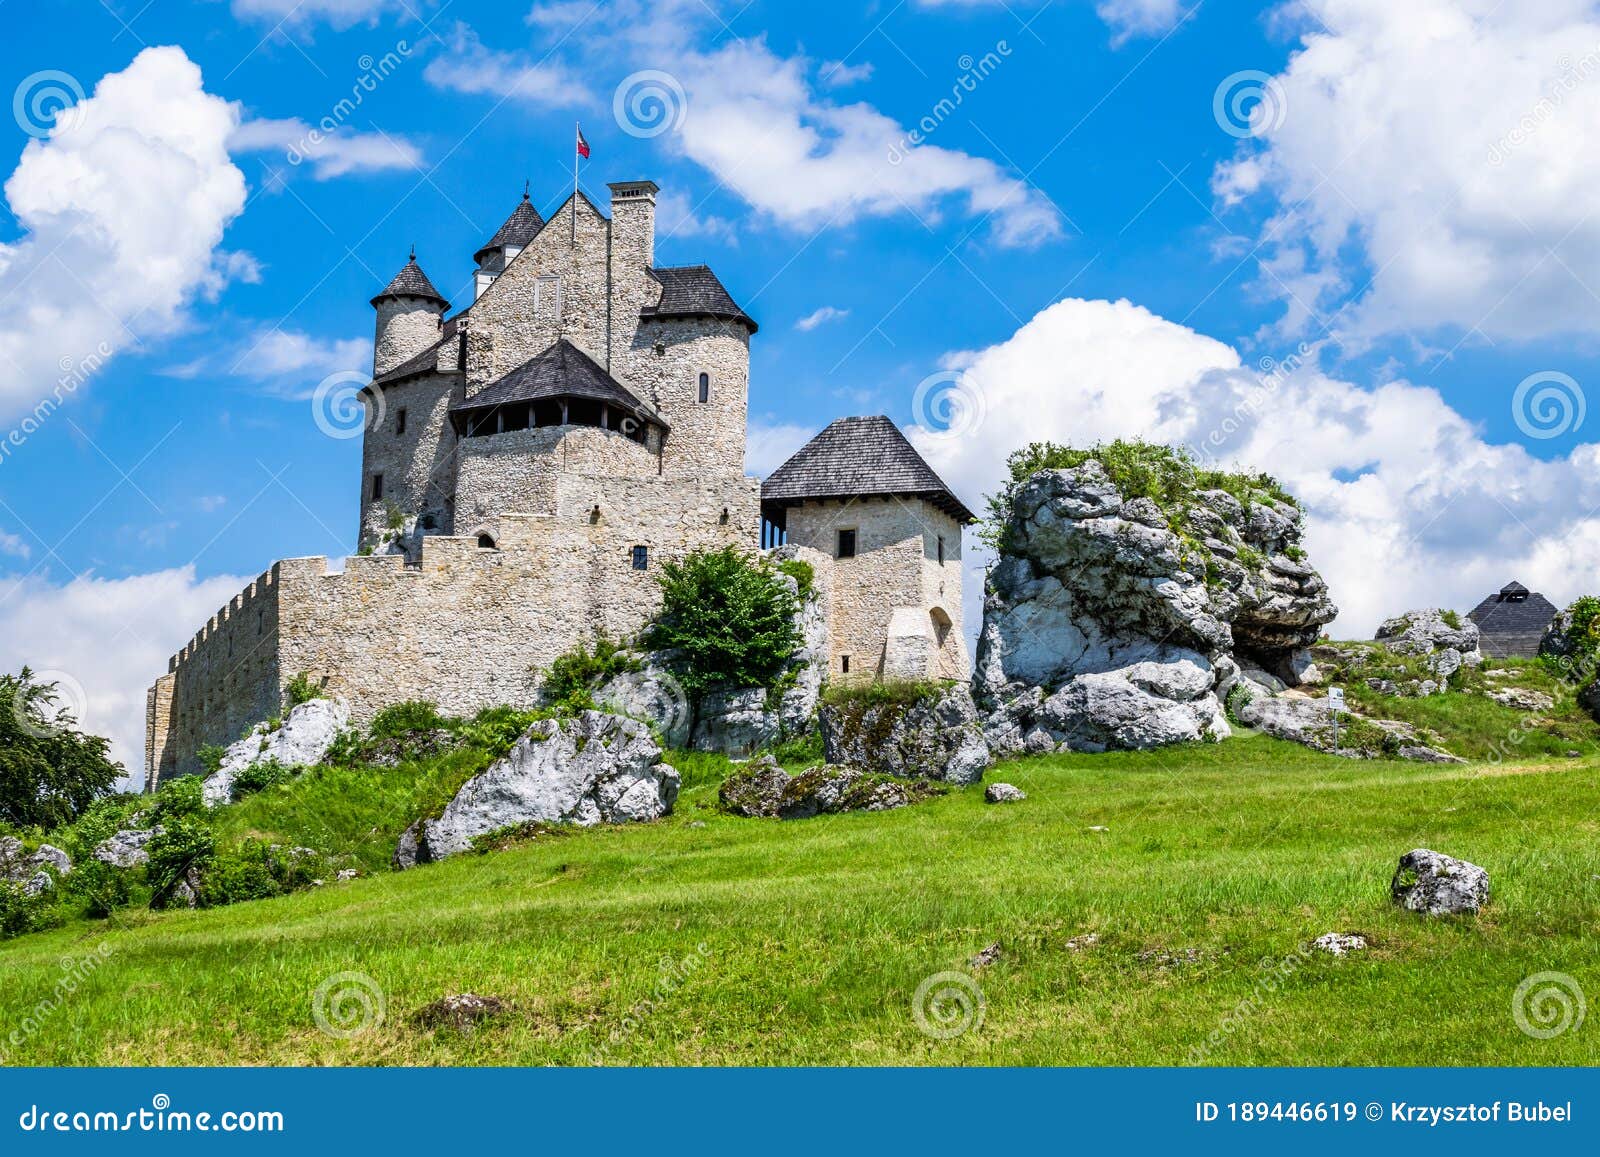 rebuilt old castle in bobolice